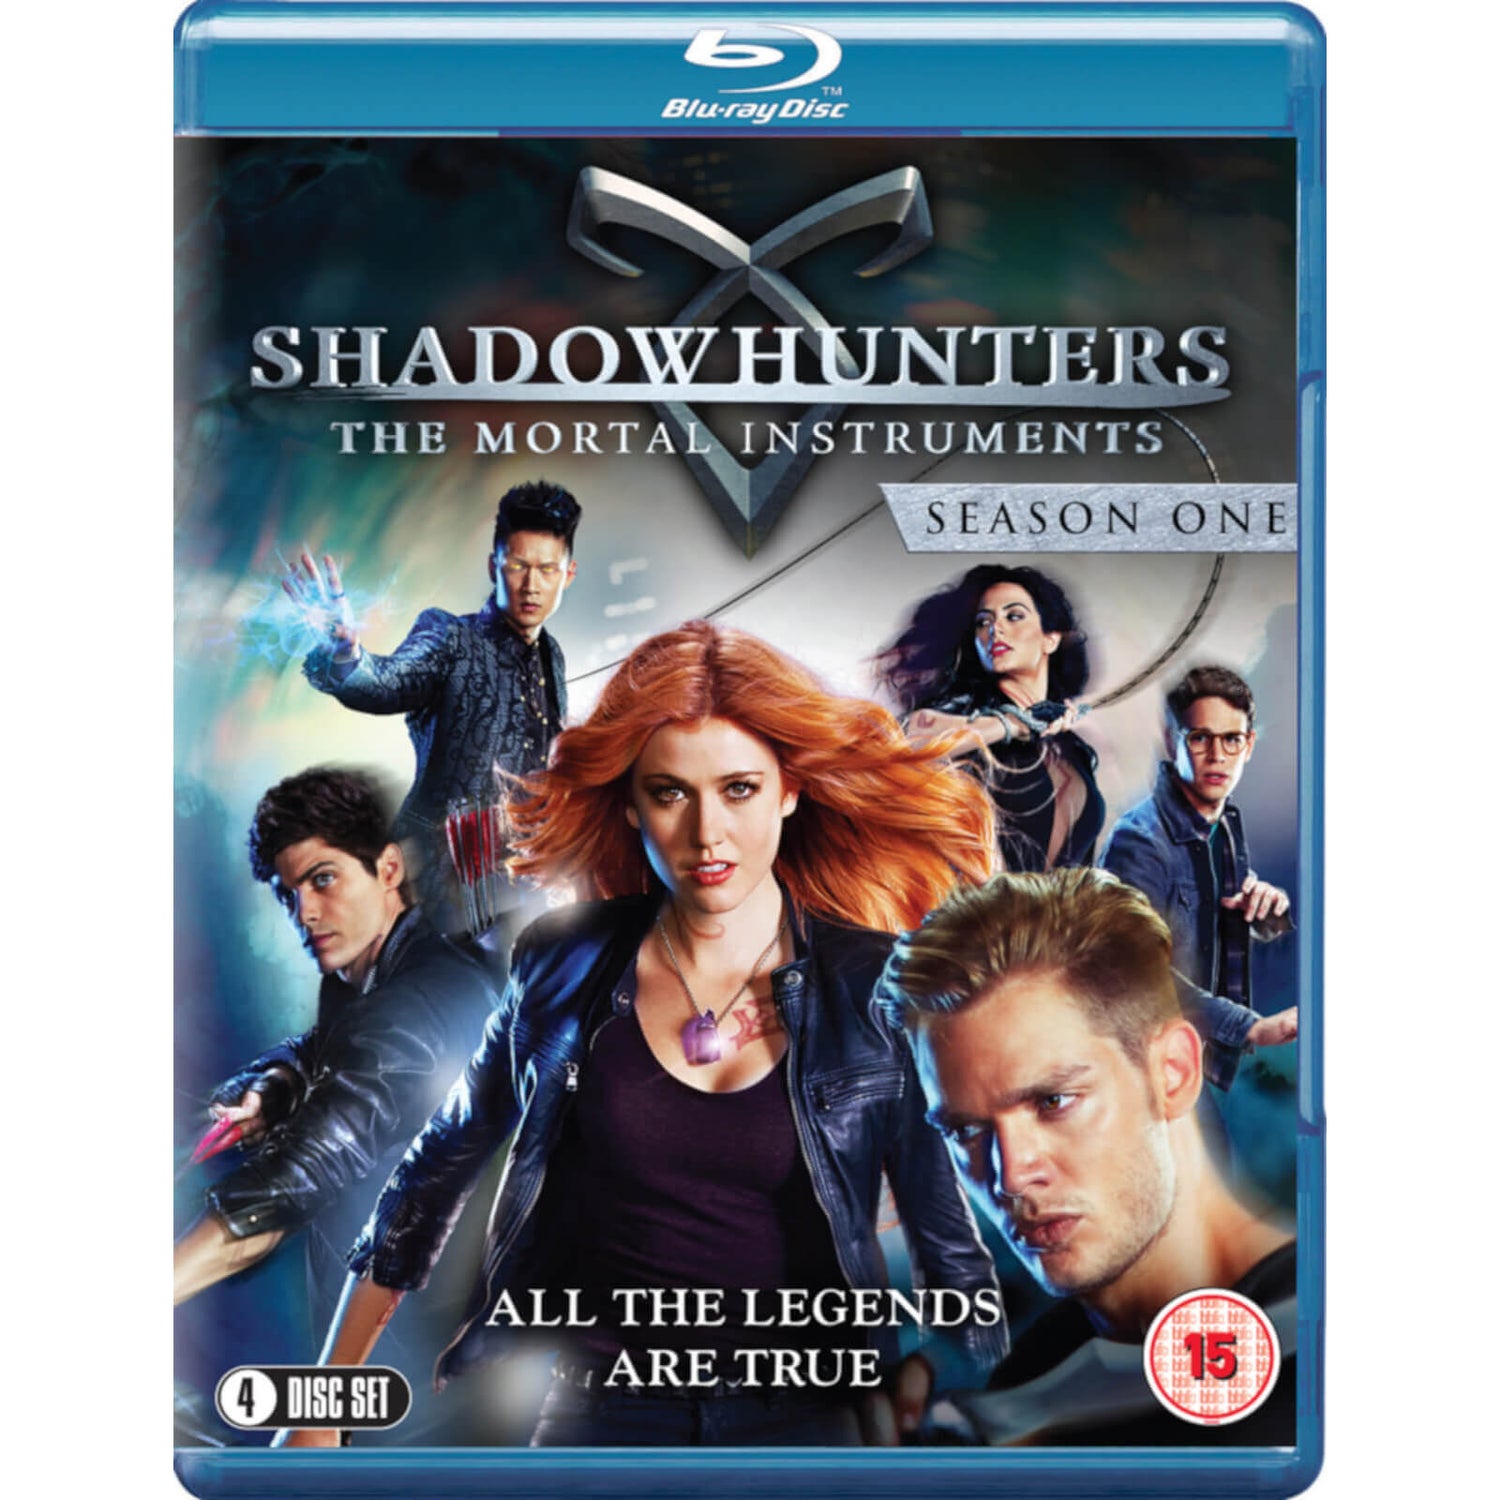 Shadowhunters Series 1